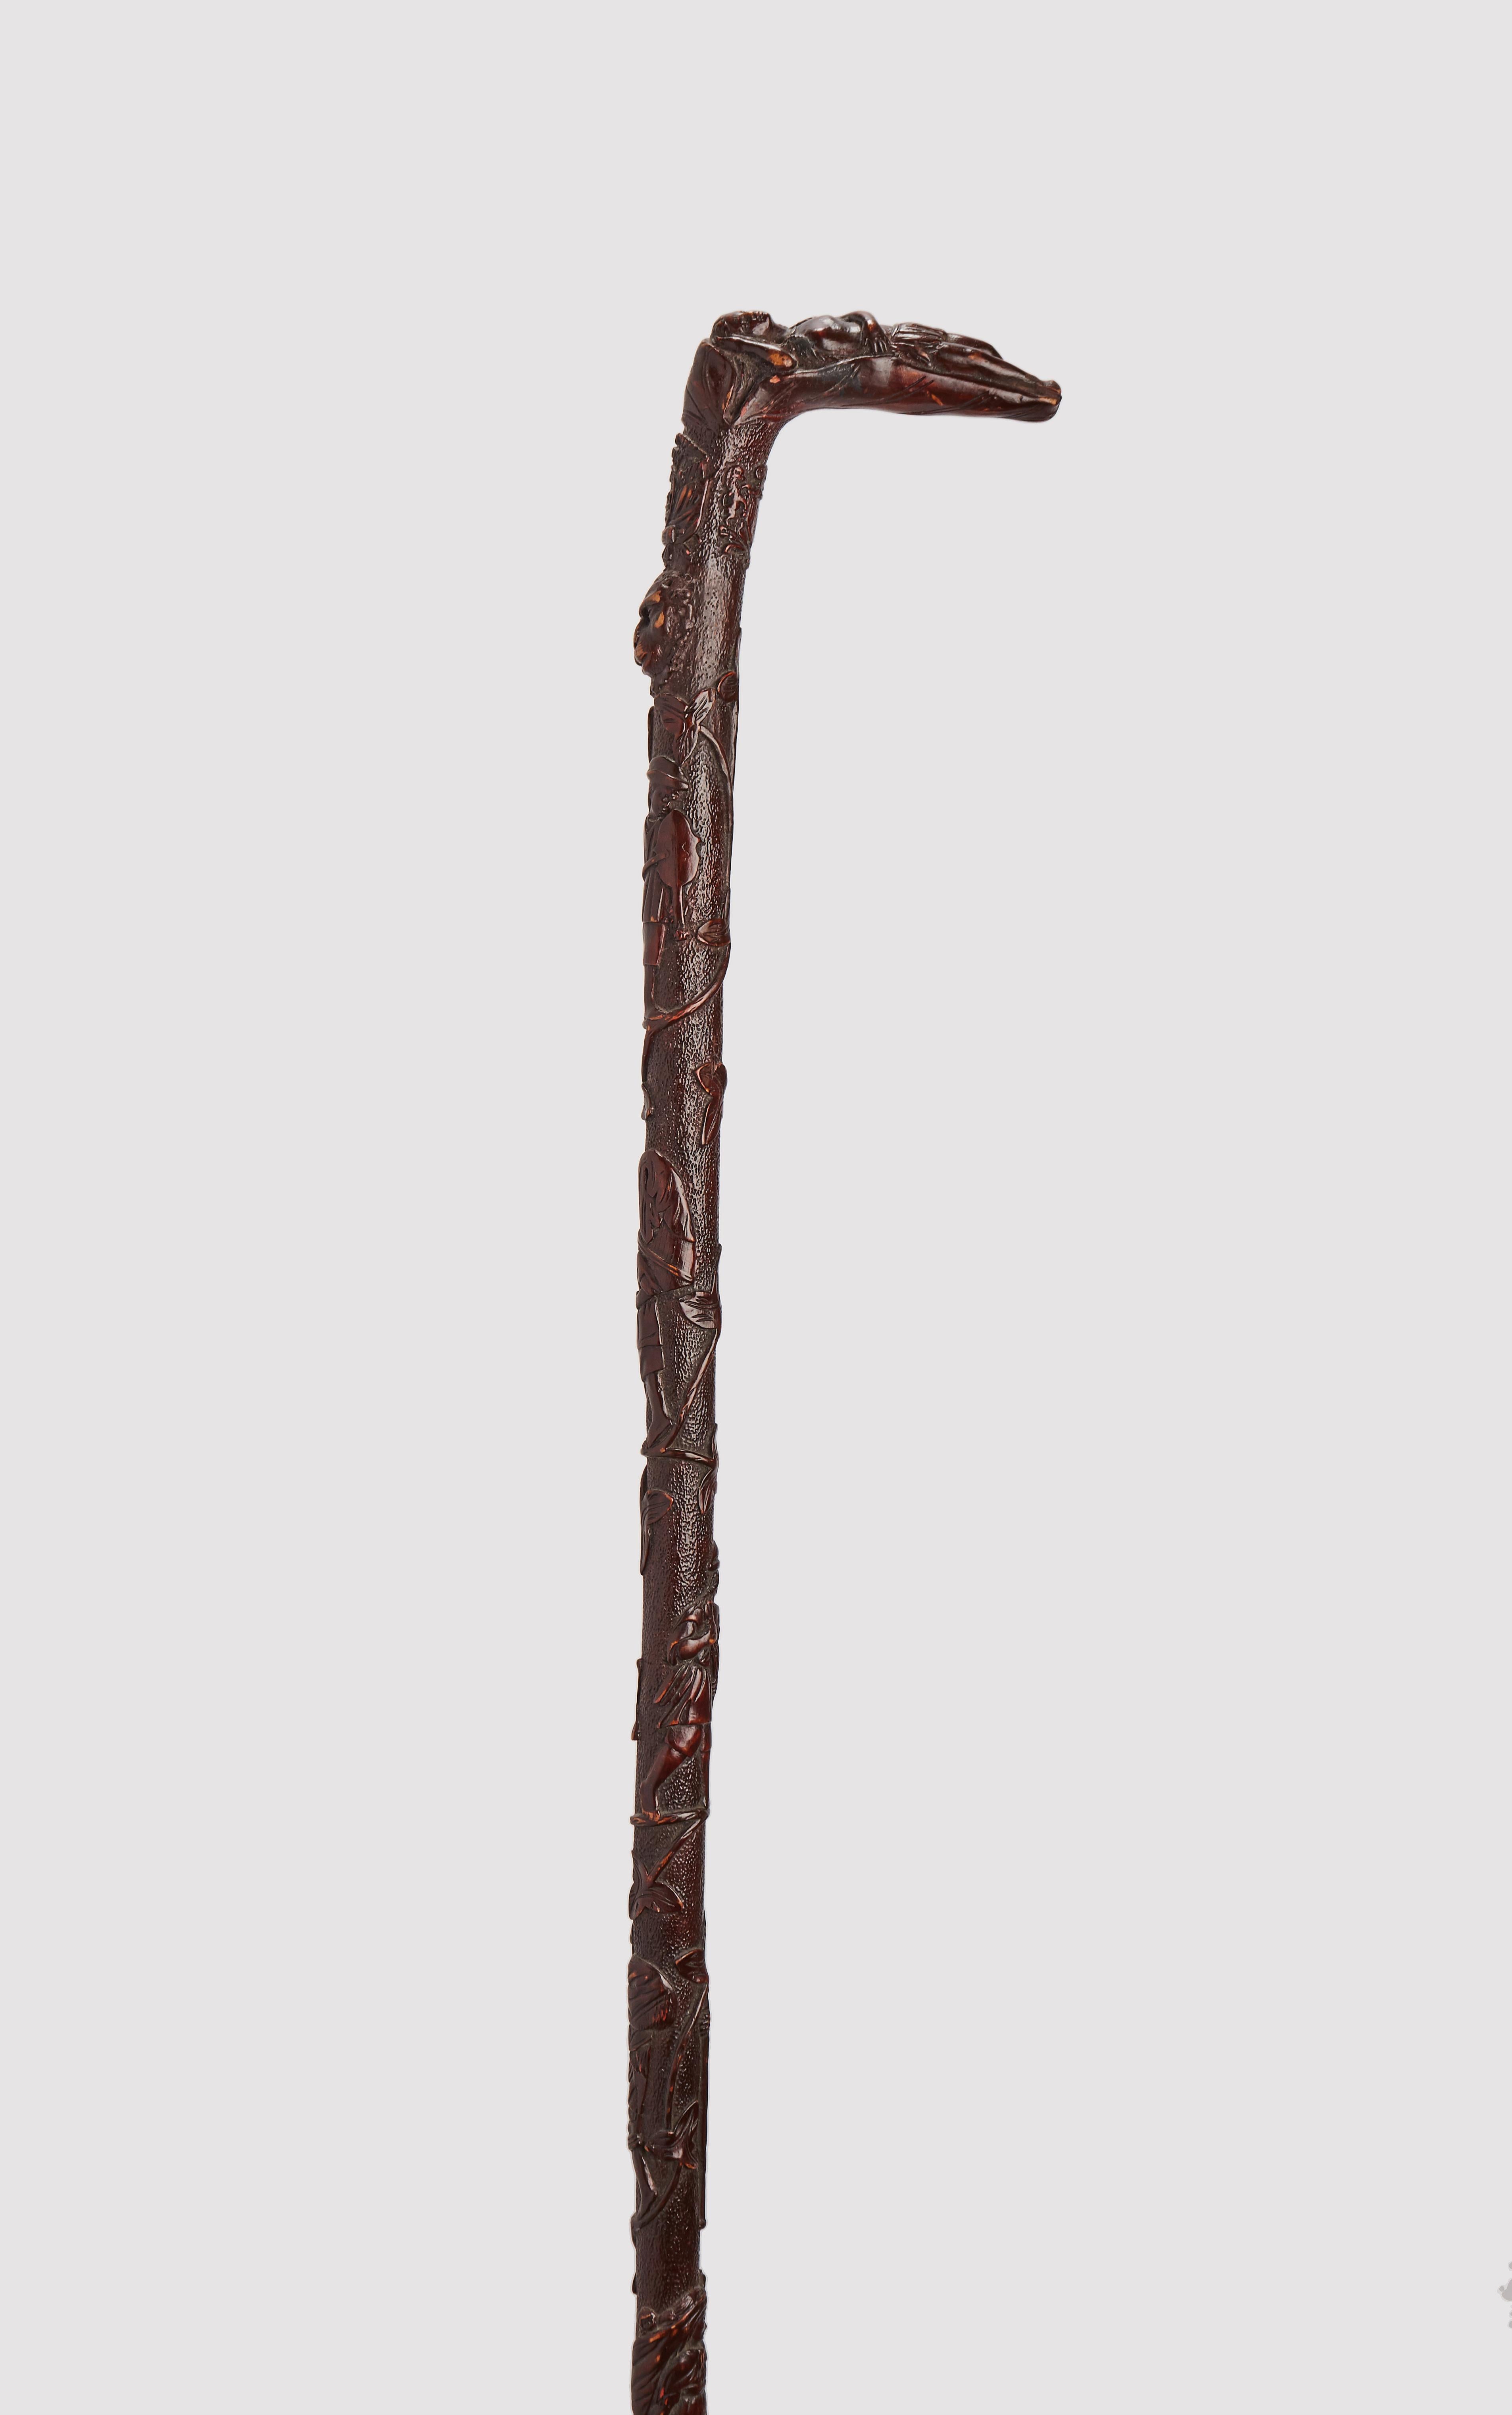 Bâton d'art populaire. Le tonneau est sculpté et gravé dans une seule branche d'érable mexicain (Acer skutchii) et recouvert d'une patine brun foncé.
La poignée représente la sculpture d'une femme indienne allongée et reposant sur une feuille de